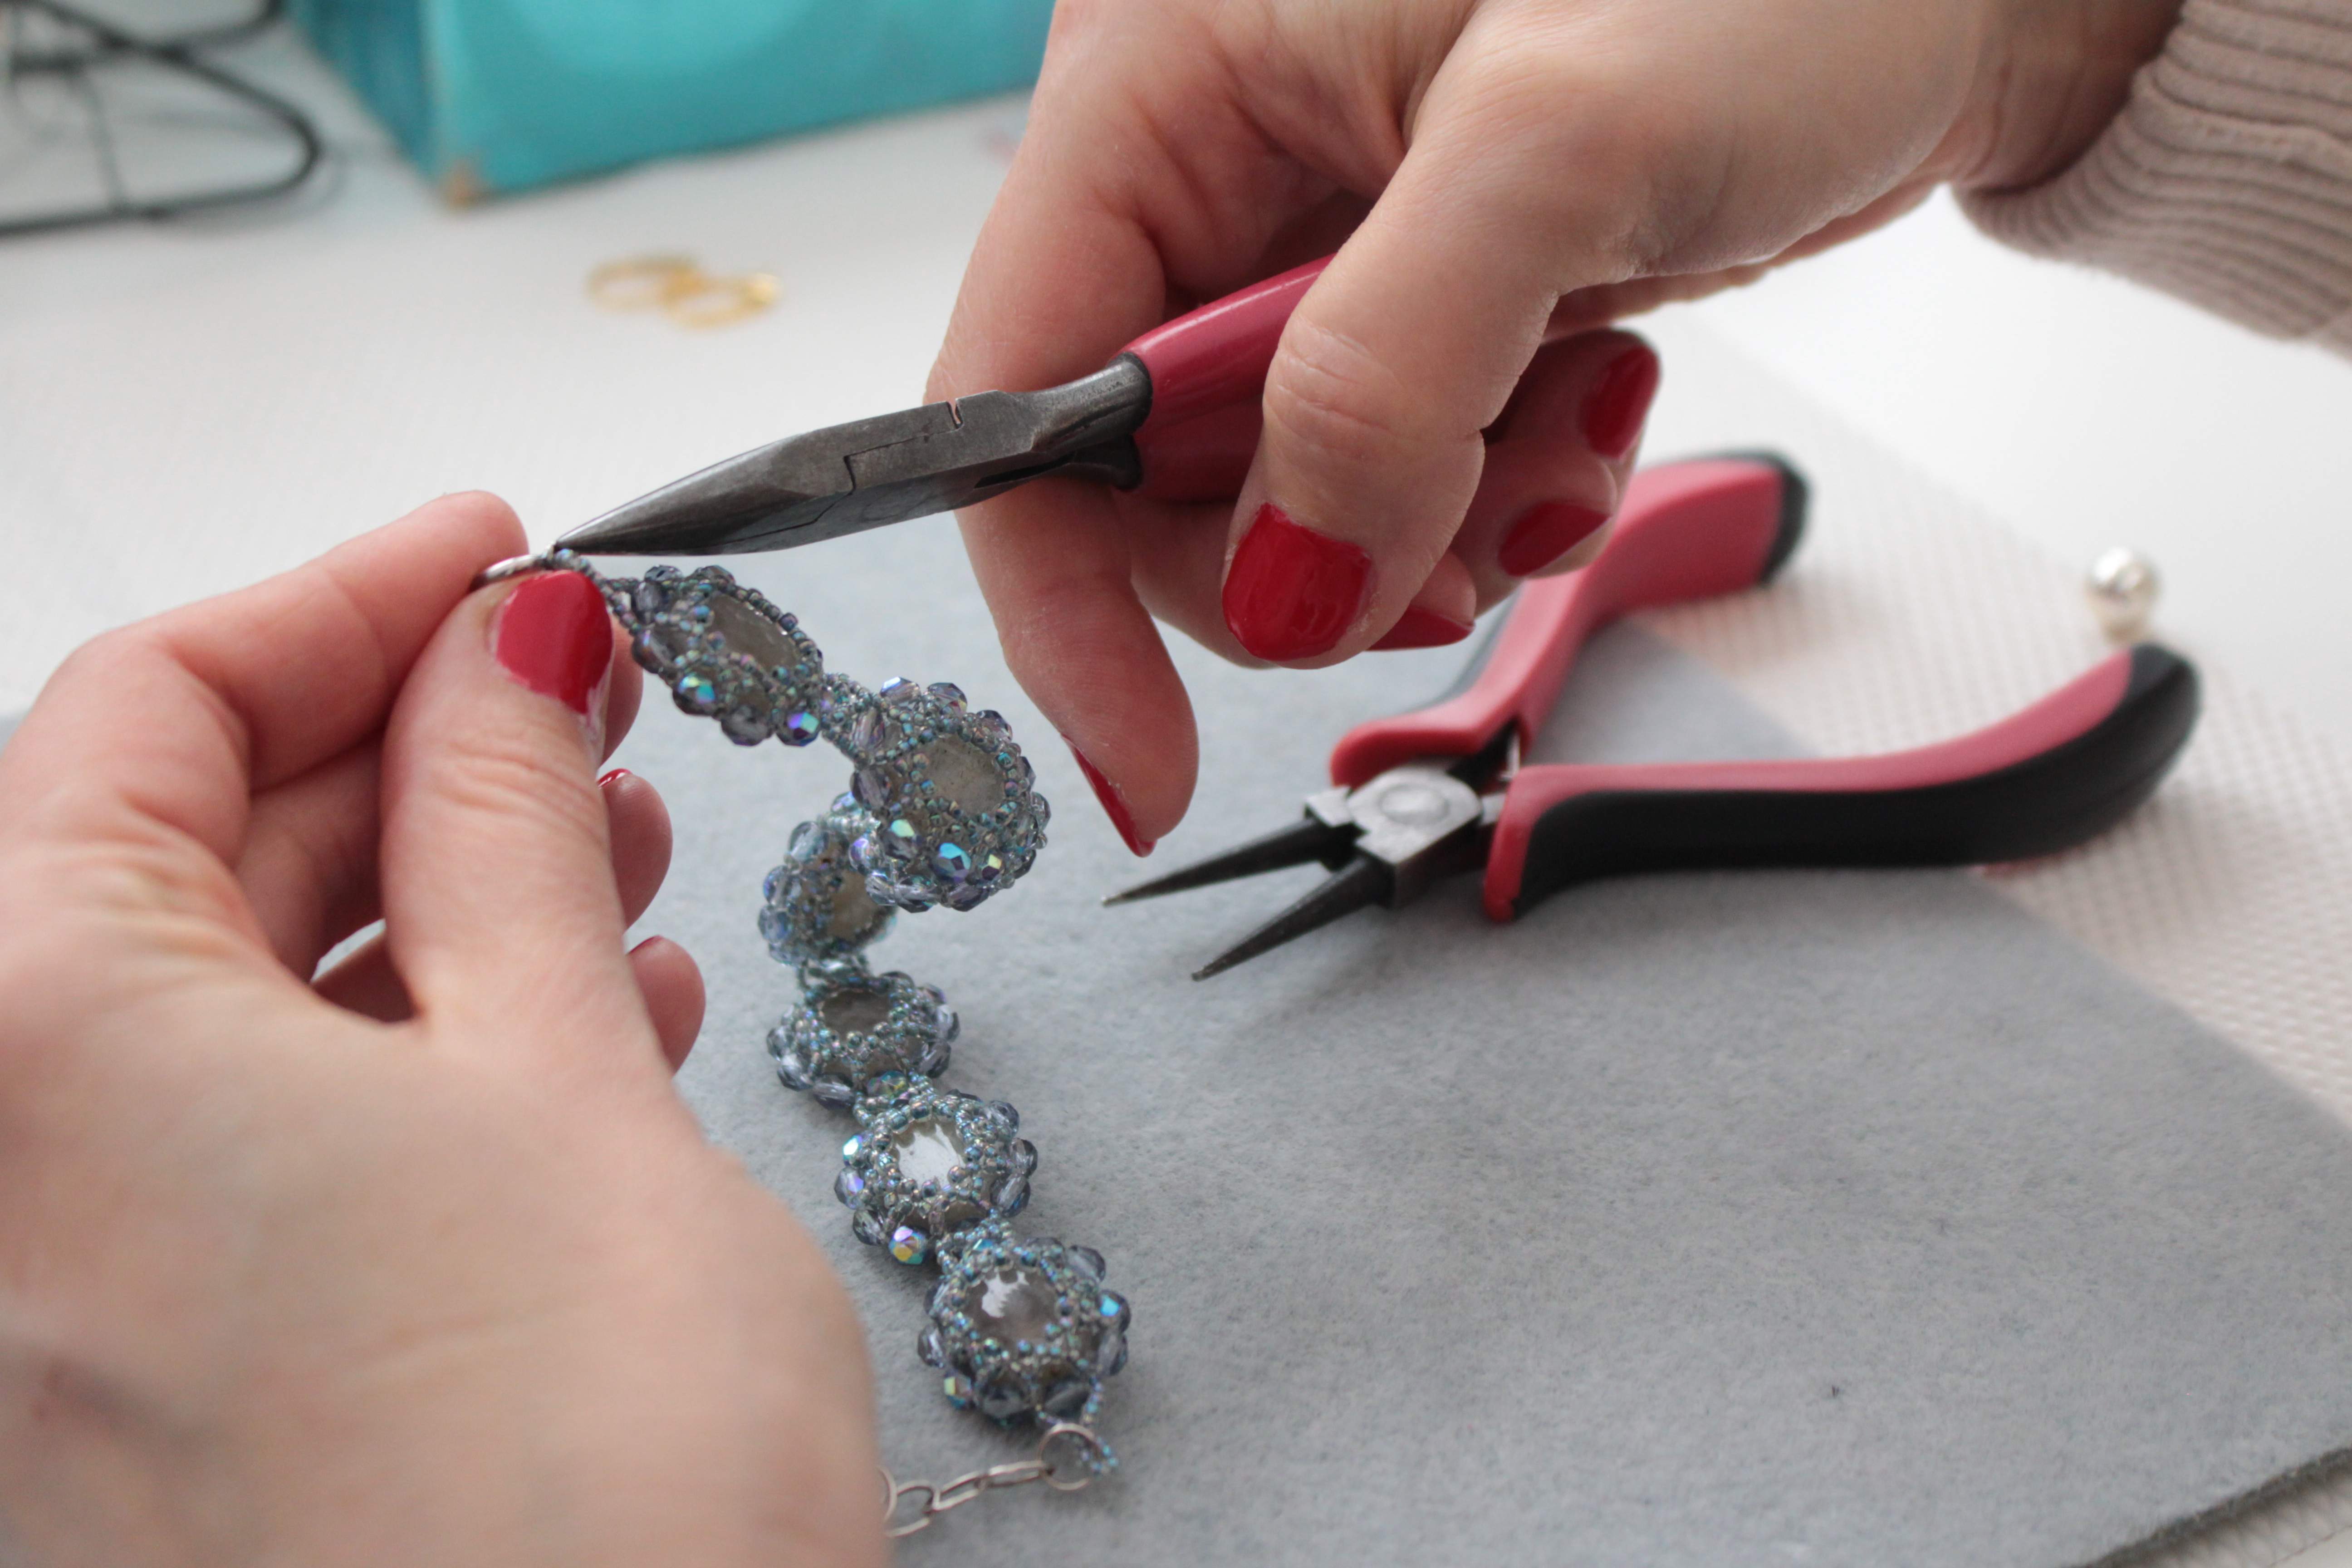 Praca przy produkcji biżuterii wymaga niezwykłej precyzji i dbania o najmniejsze szczegóły